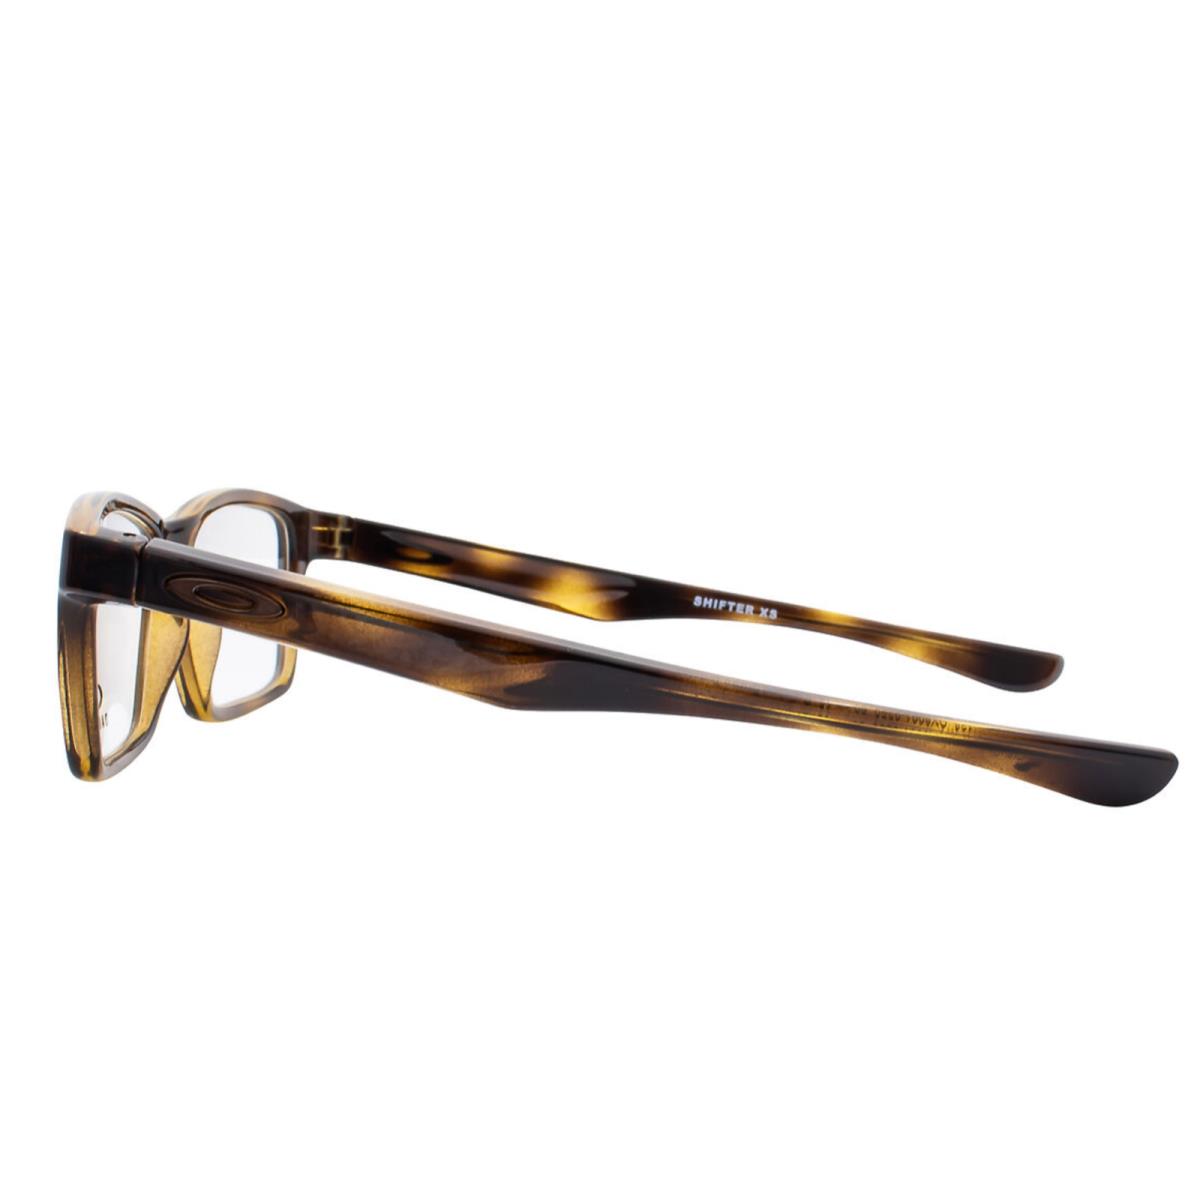 Oakley eyeglasses SHIFTER - POLISHED BROWN TORTOISE Frame, Demos with Print Lens 0